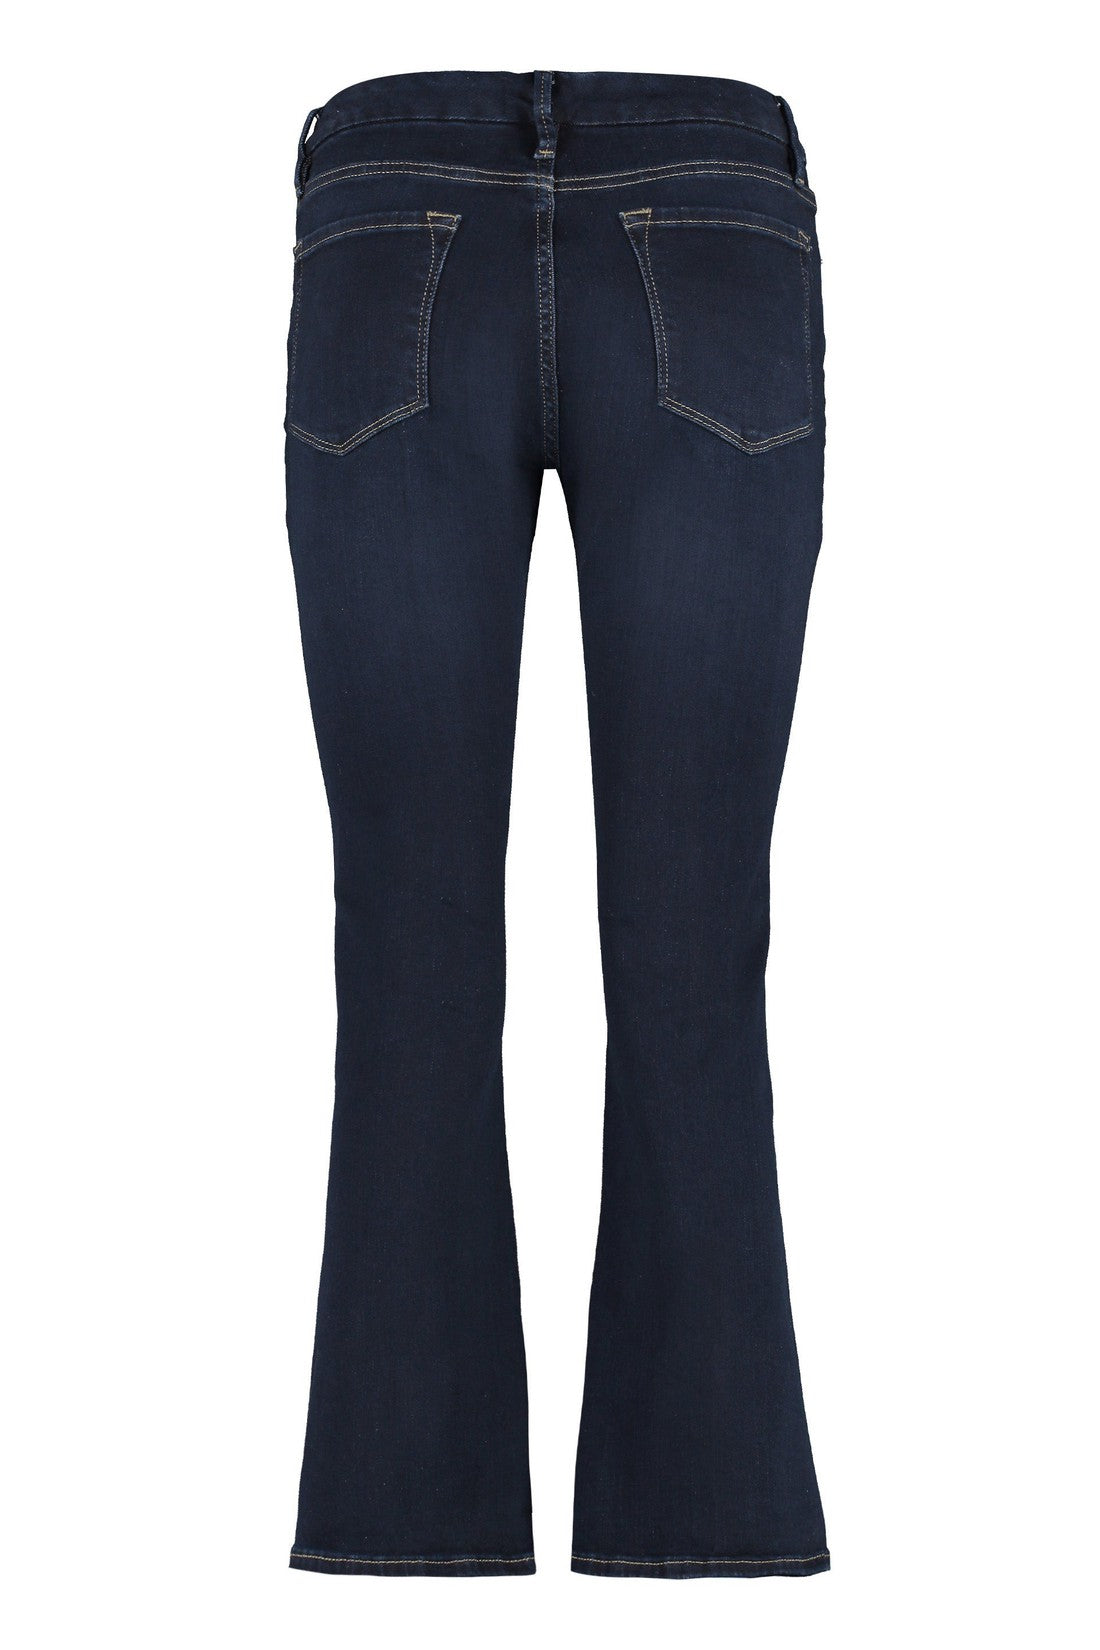 Frame-OUTLET-SALE-Le Crop Mini boot boot-cut jeans-ARCHIVIST